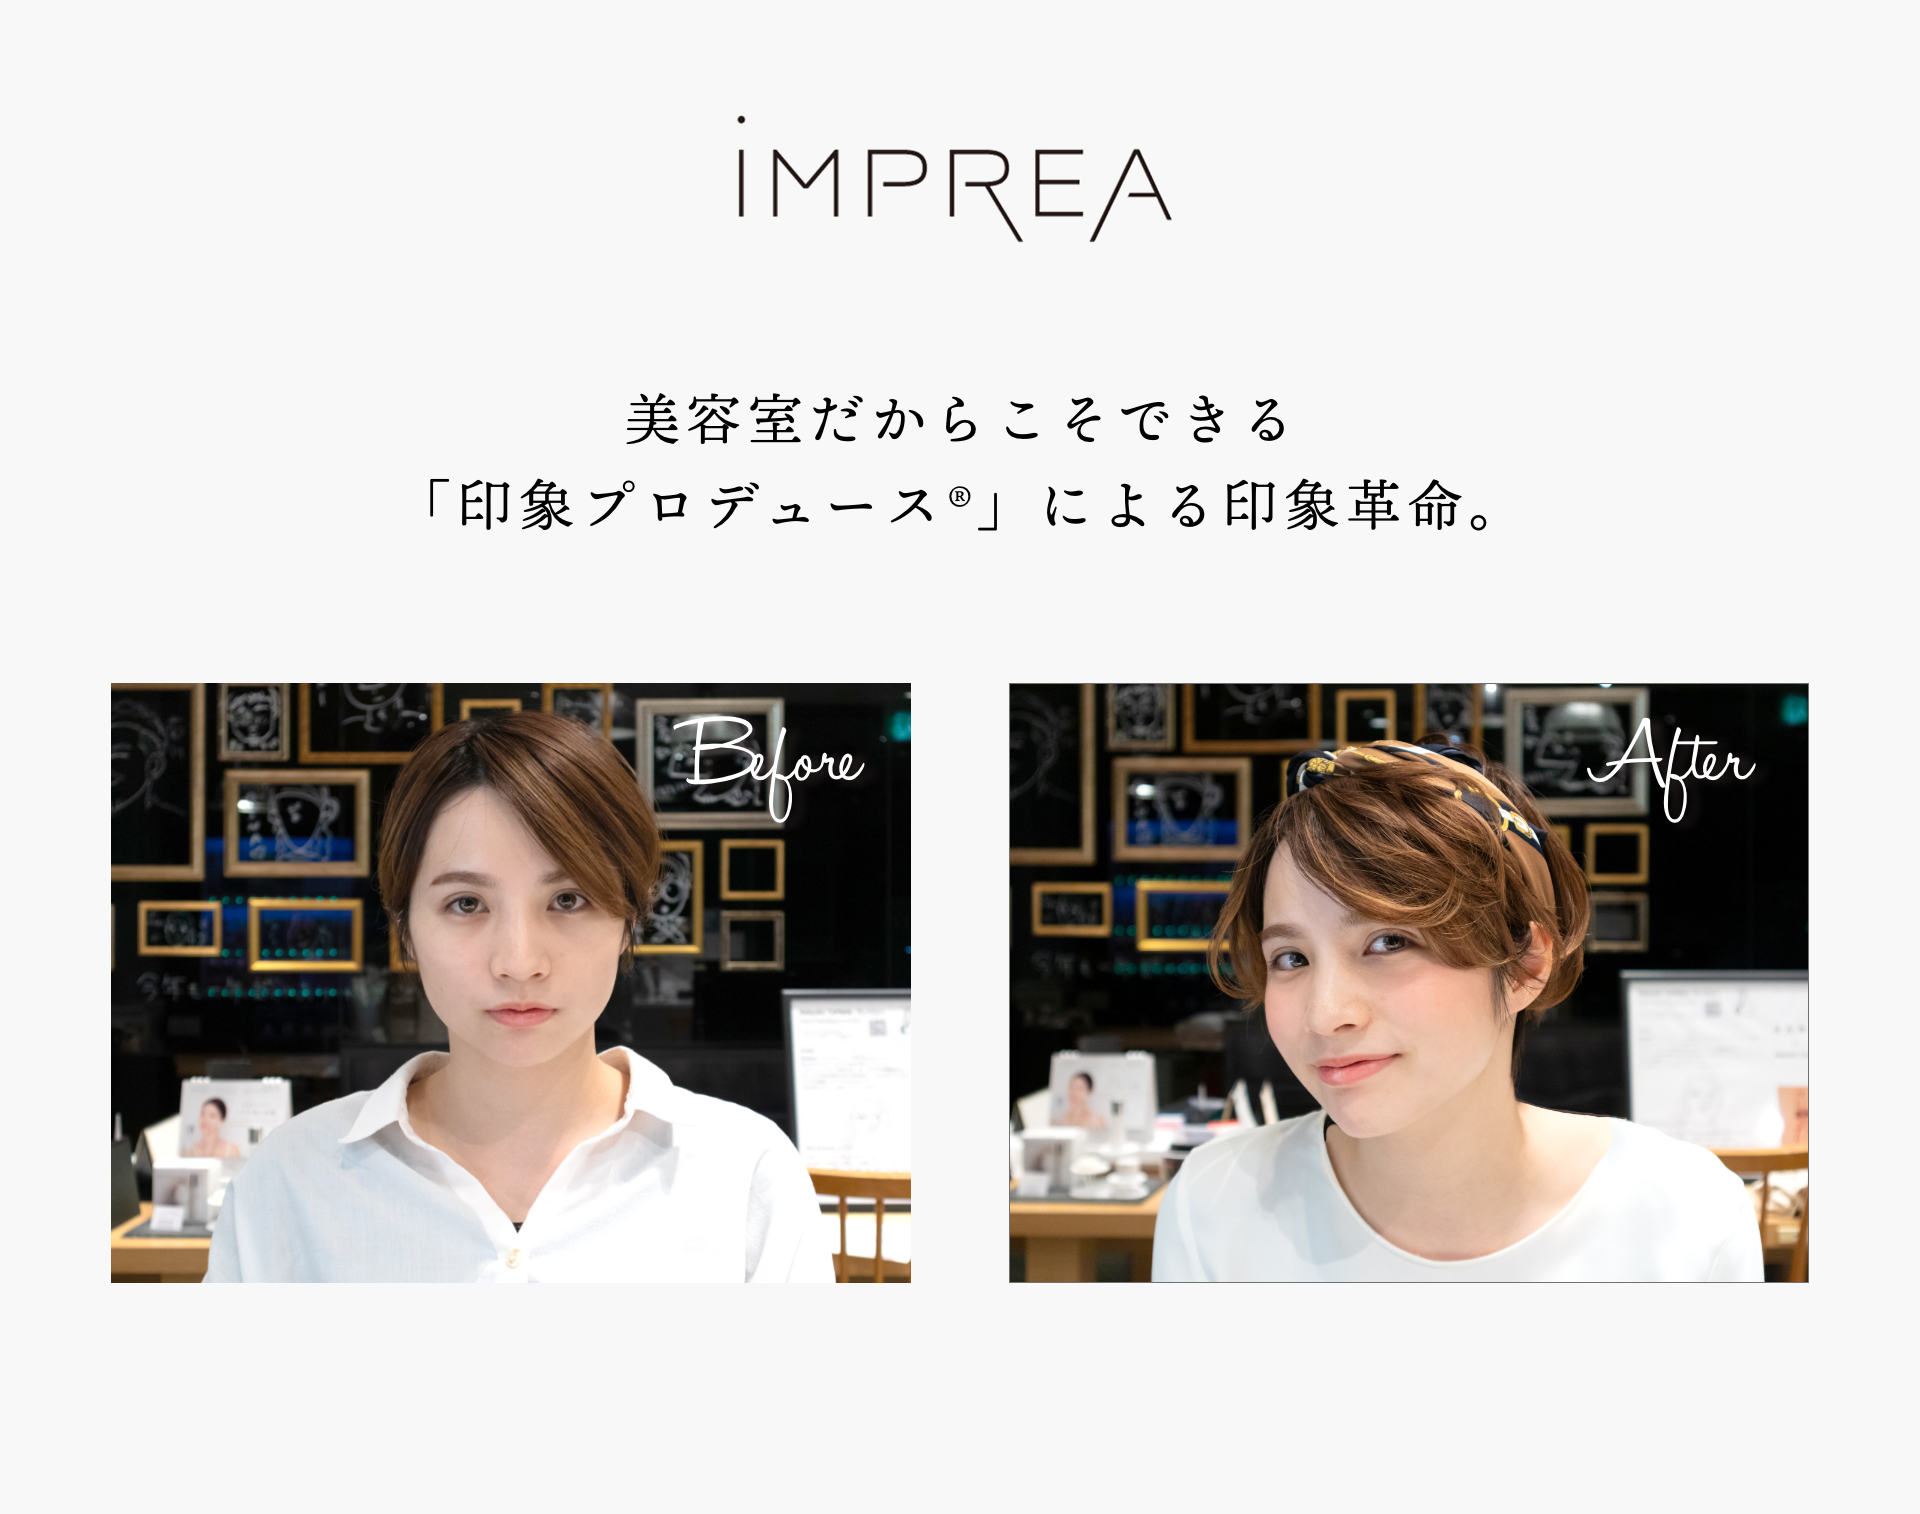 印象プロデュース 無料カウンセリング Makeup 福岡の美容室sara サラ Sara は 福岡 天神にある女性の美しさが輝く力をチャージする新しい 空間の 美容室です